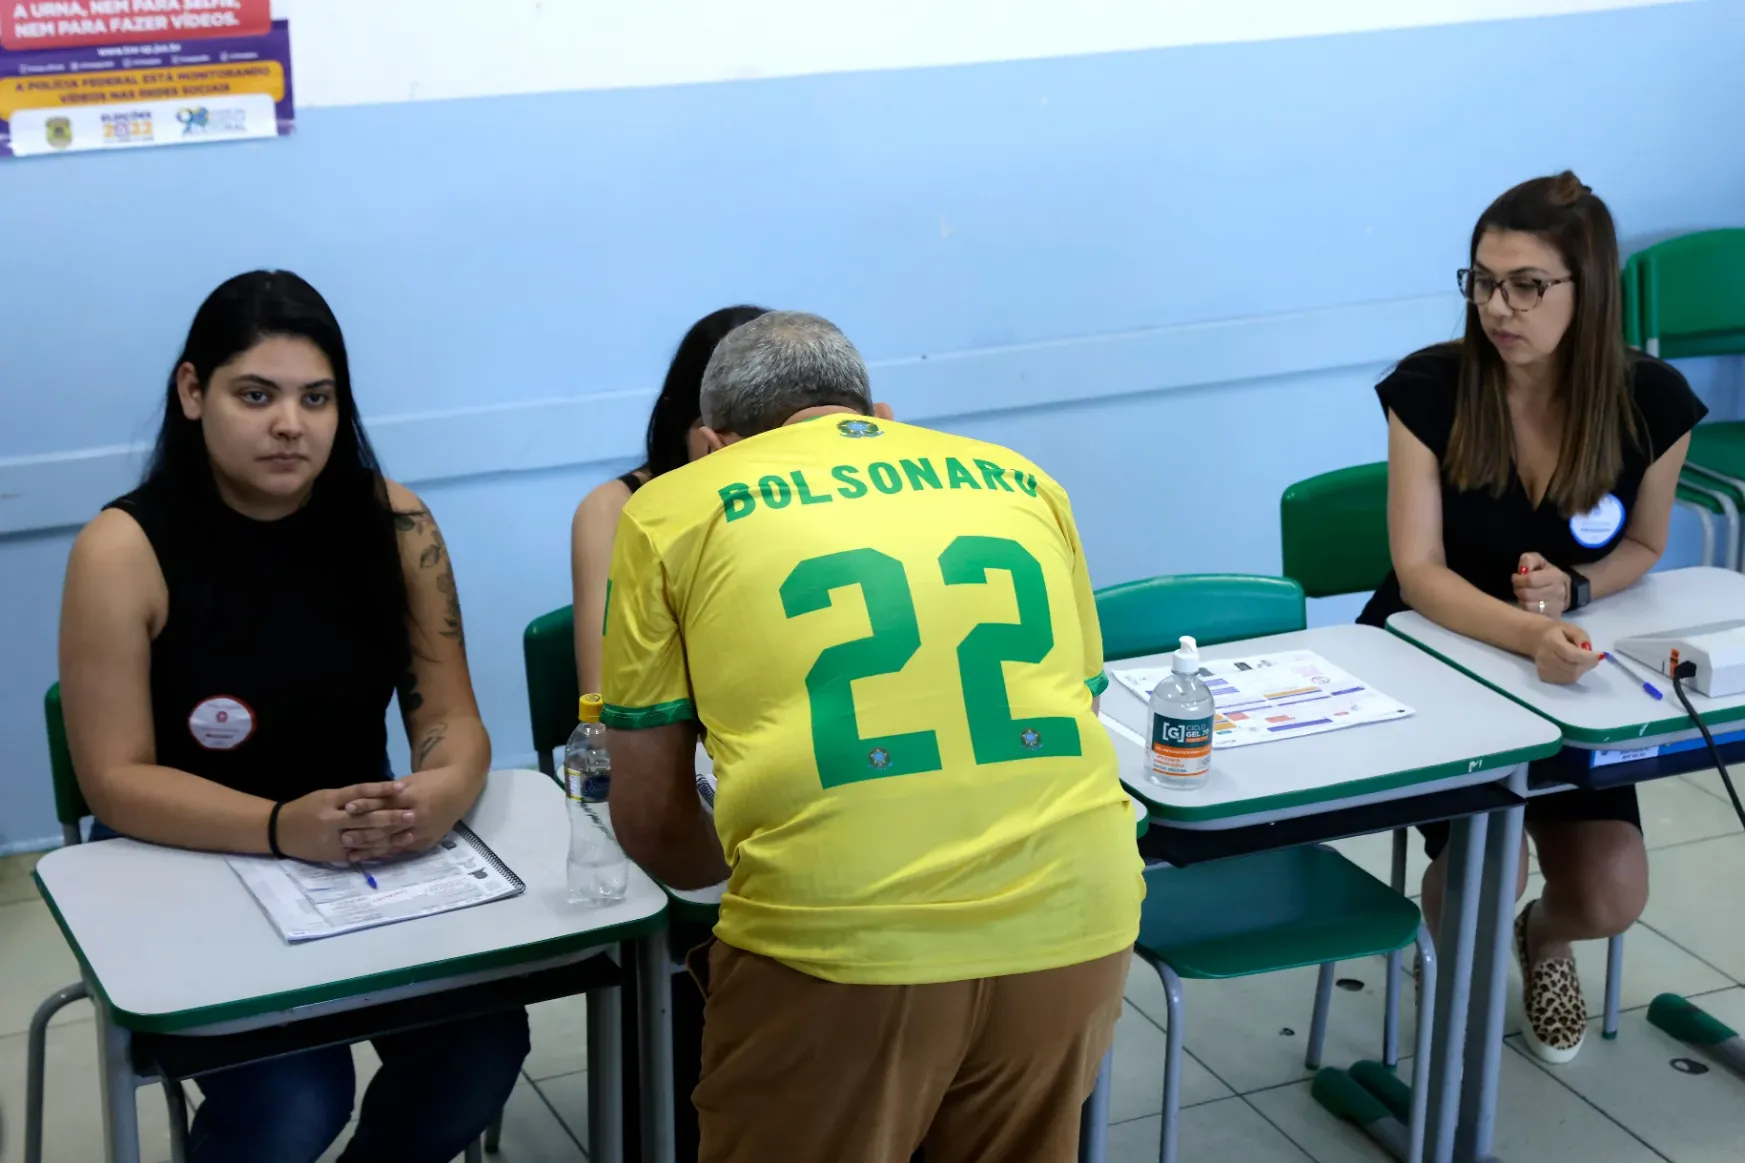 Brazília vb-szereplésén is múlhat a politikailag szétszaggatott ország egyesítése